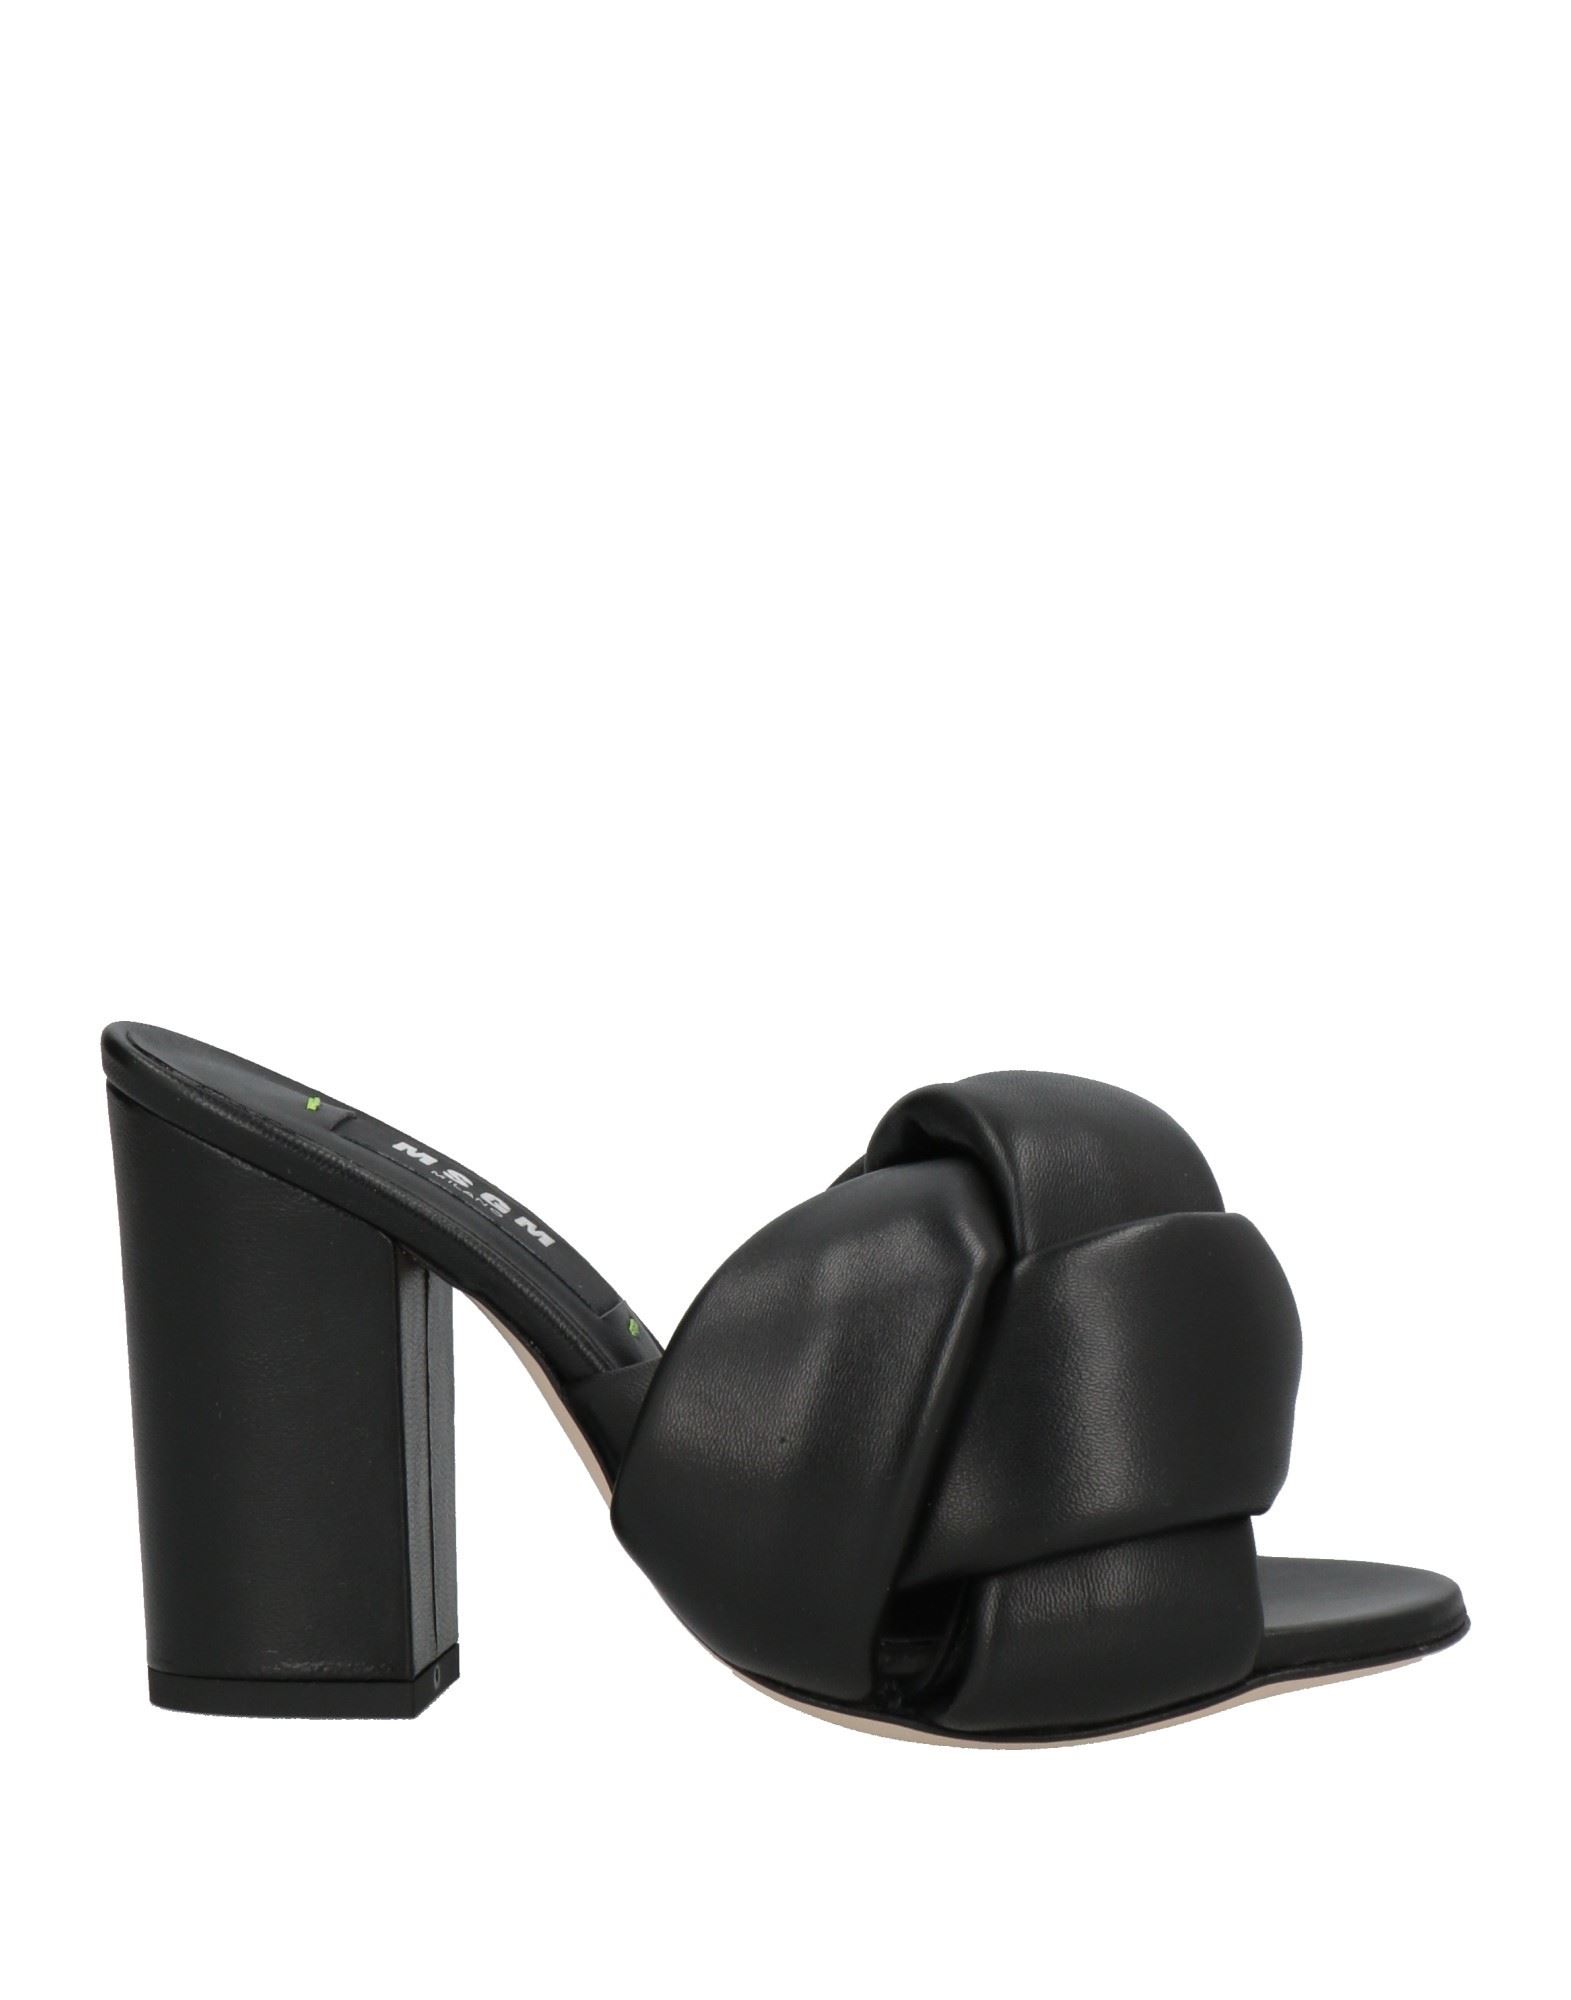 Shop Msgm Woman Sandals Black Size 7 Soft Leather